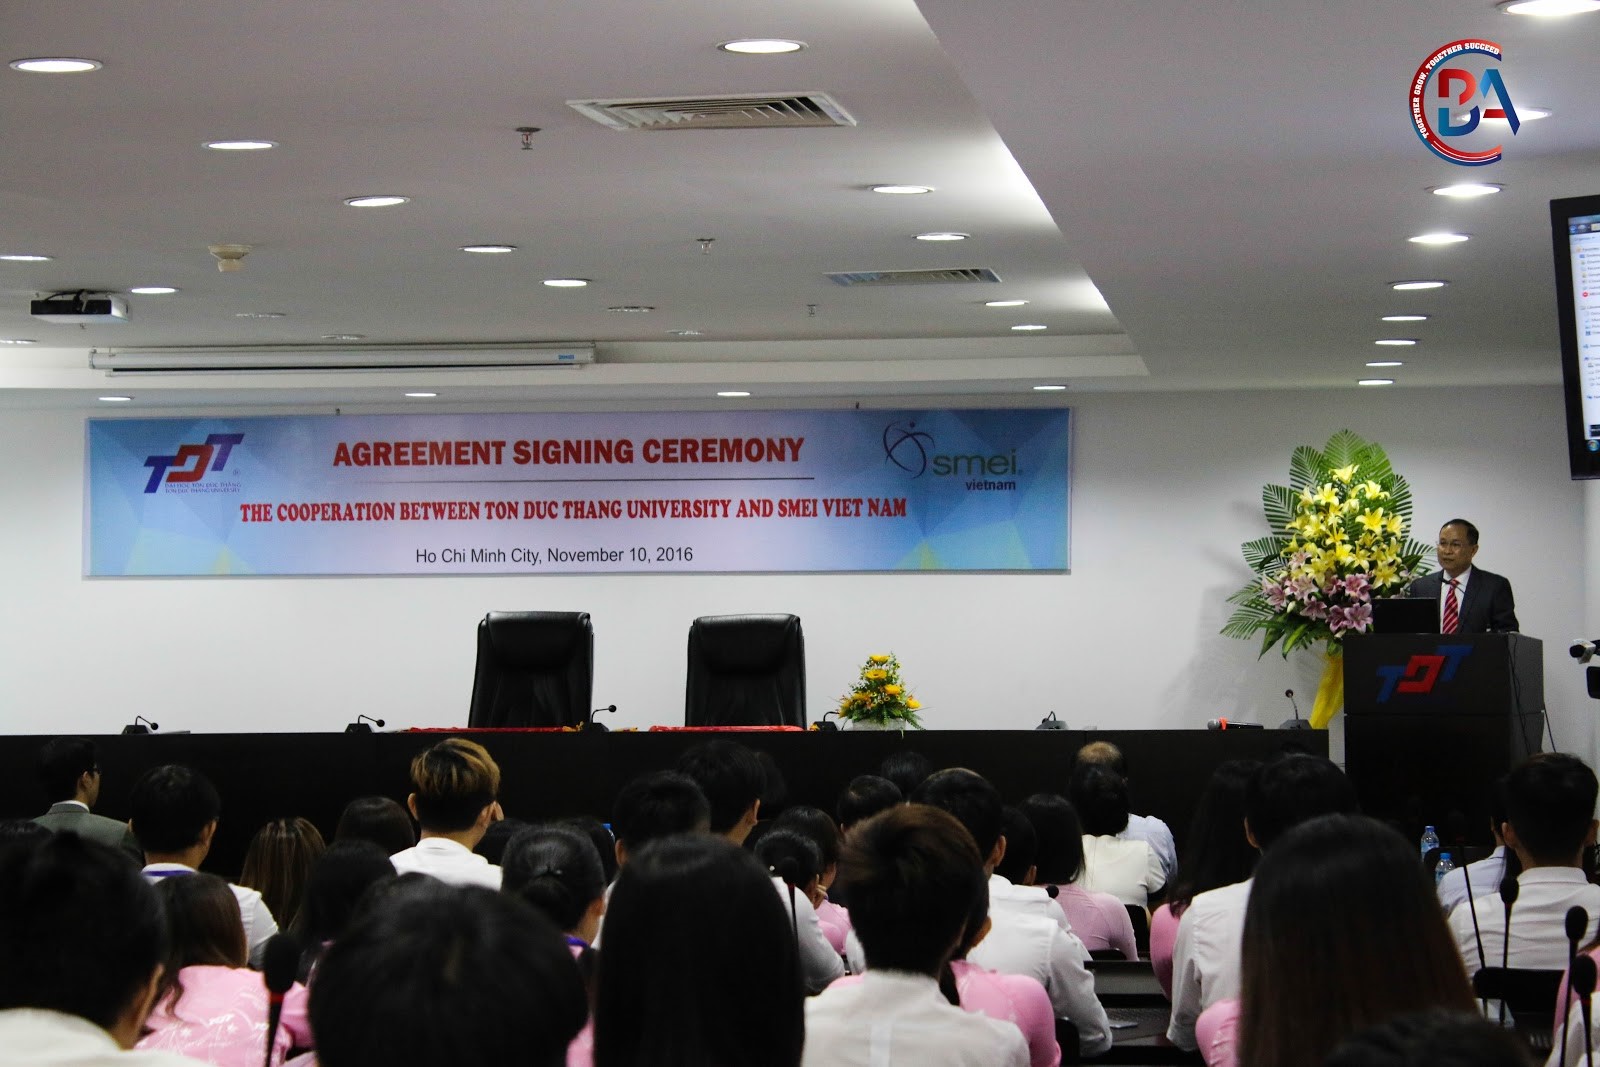 Trước khi thủ tục ký kết bắt đầu, ông Hồ Huy Huyền, CME, CSE – Tổng giám đốc SMEI Việt Nam chia sẻ về ý nghĩa của việc hợp tác và sự cam kết của SMEI đồng hành với nhà trường.